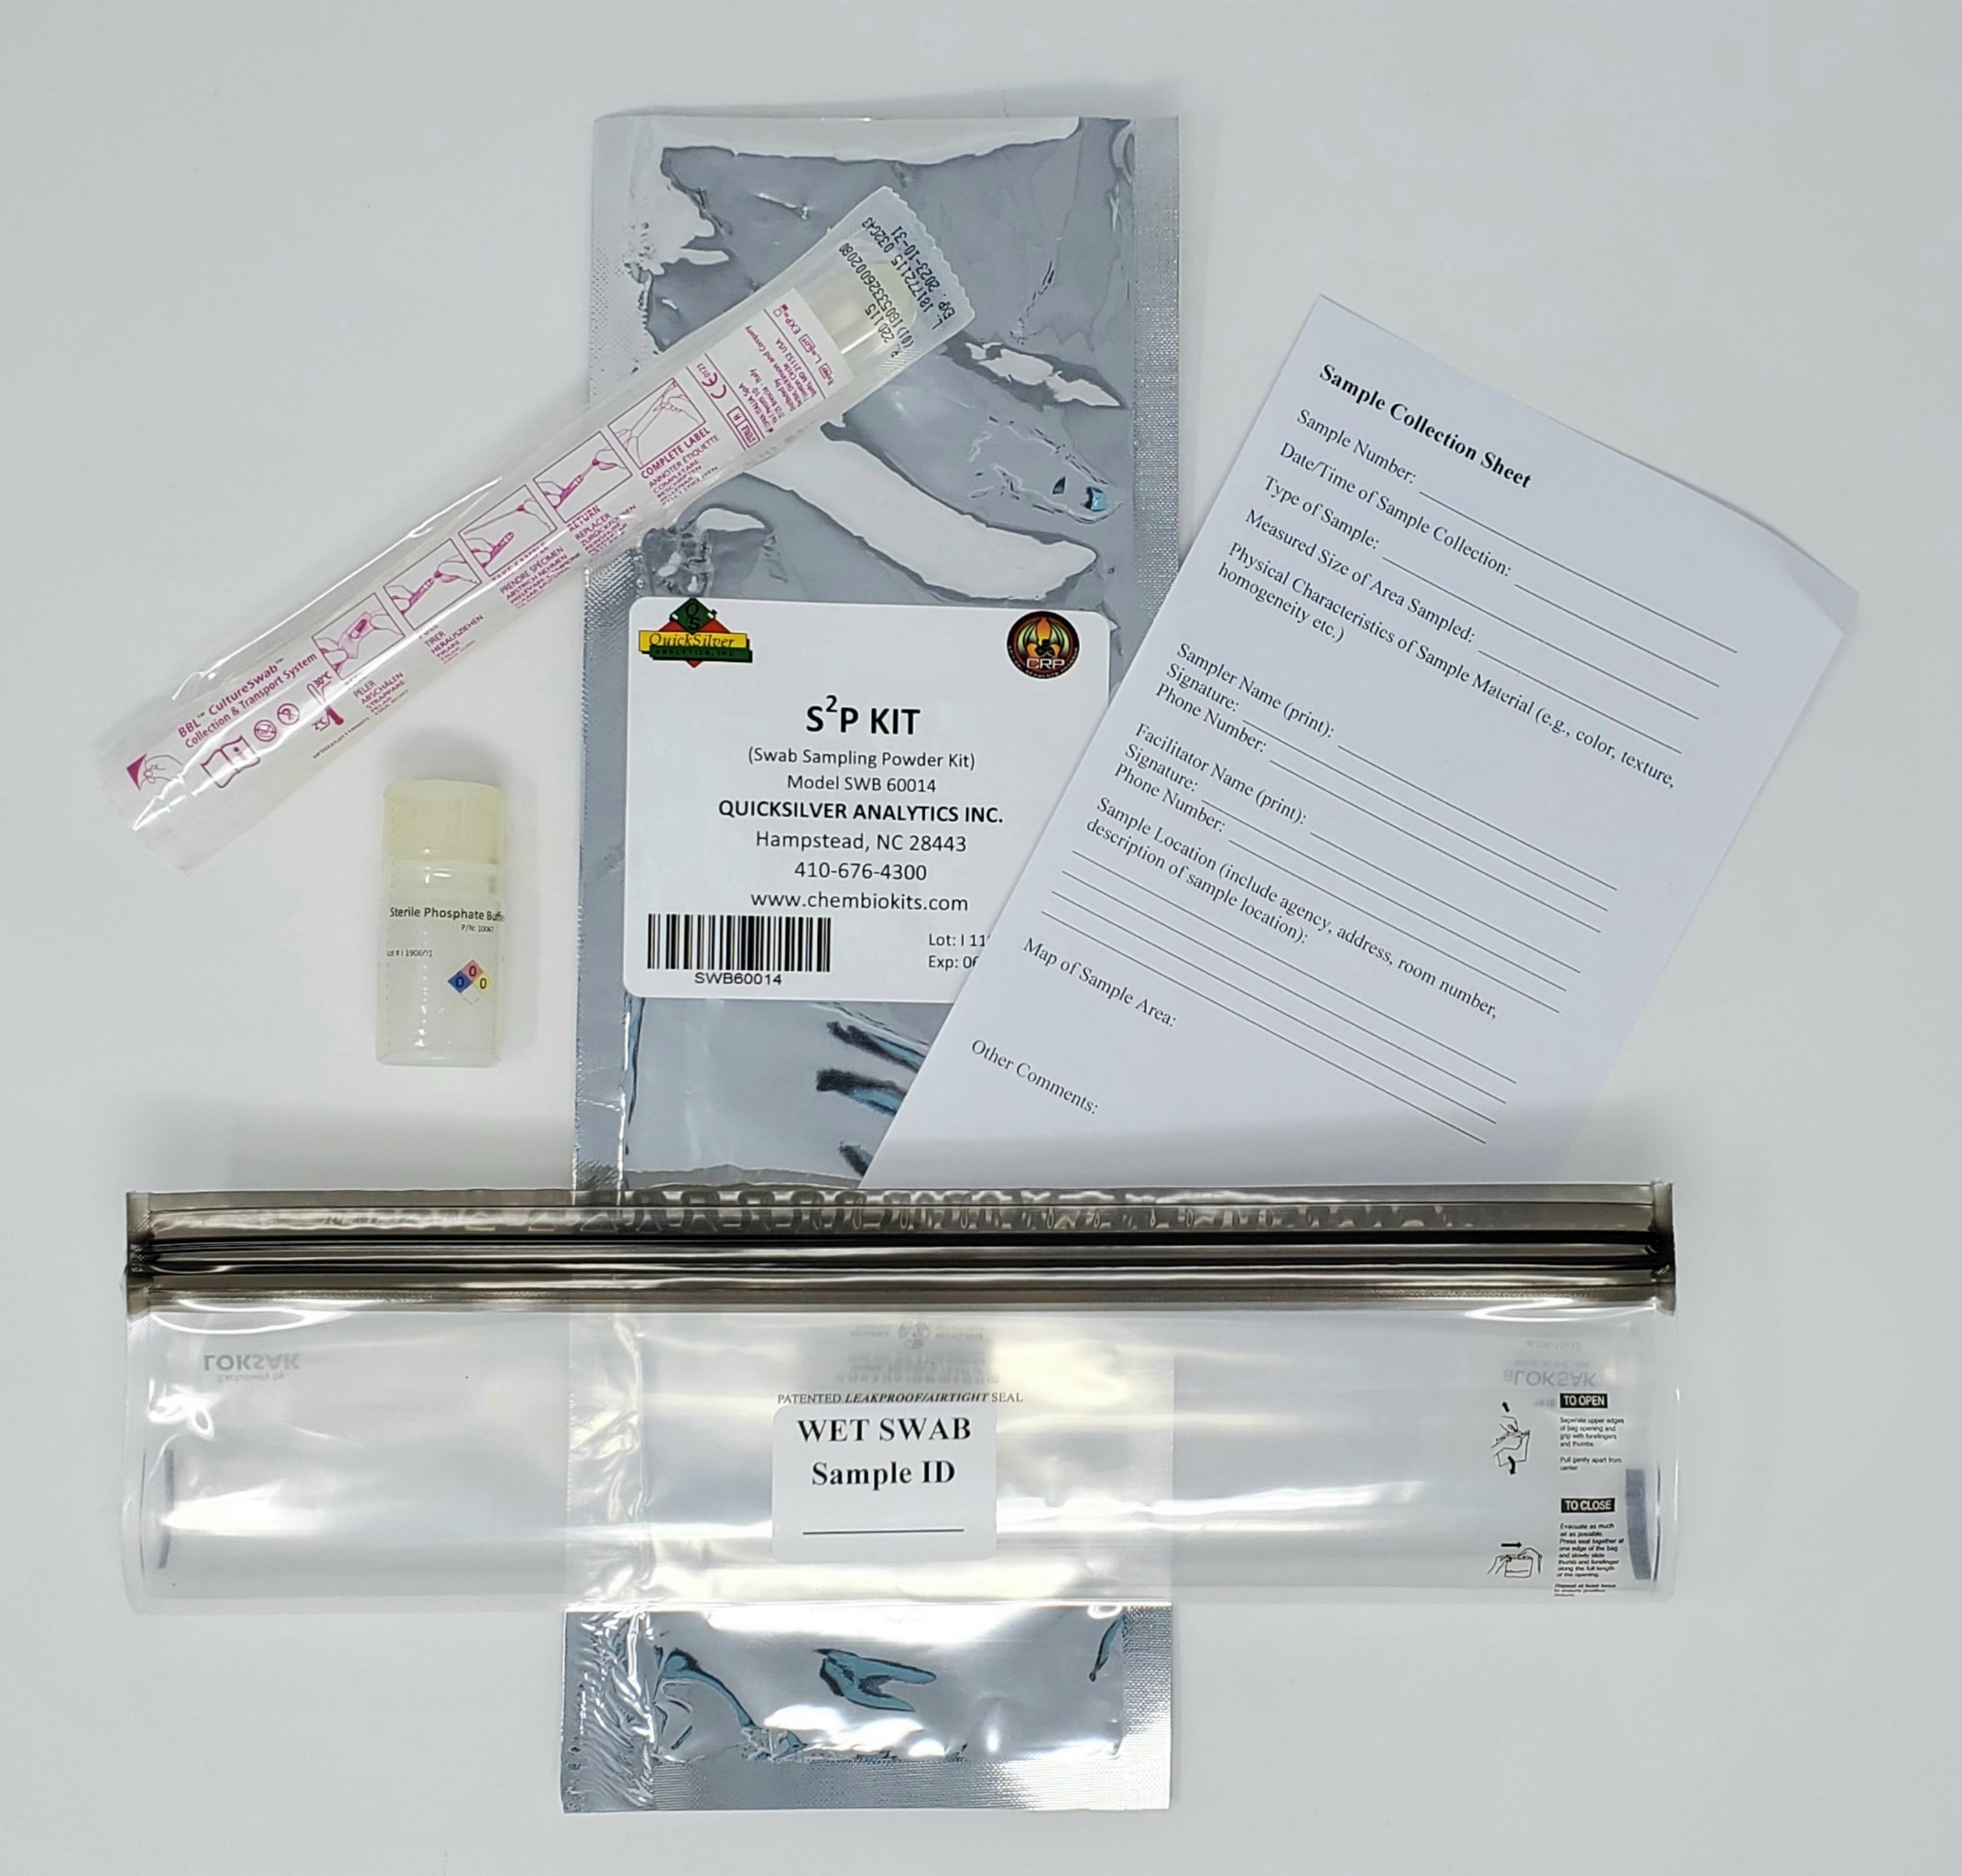 S2P Kit -Swab Sampling Powder Kit